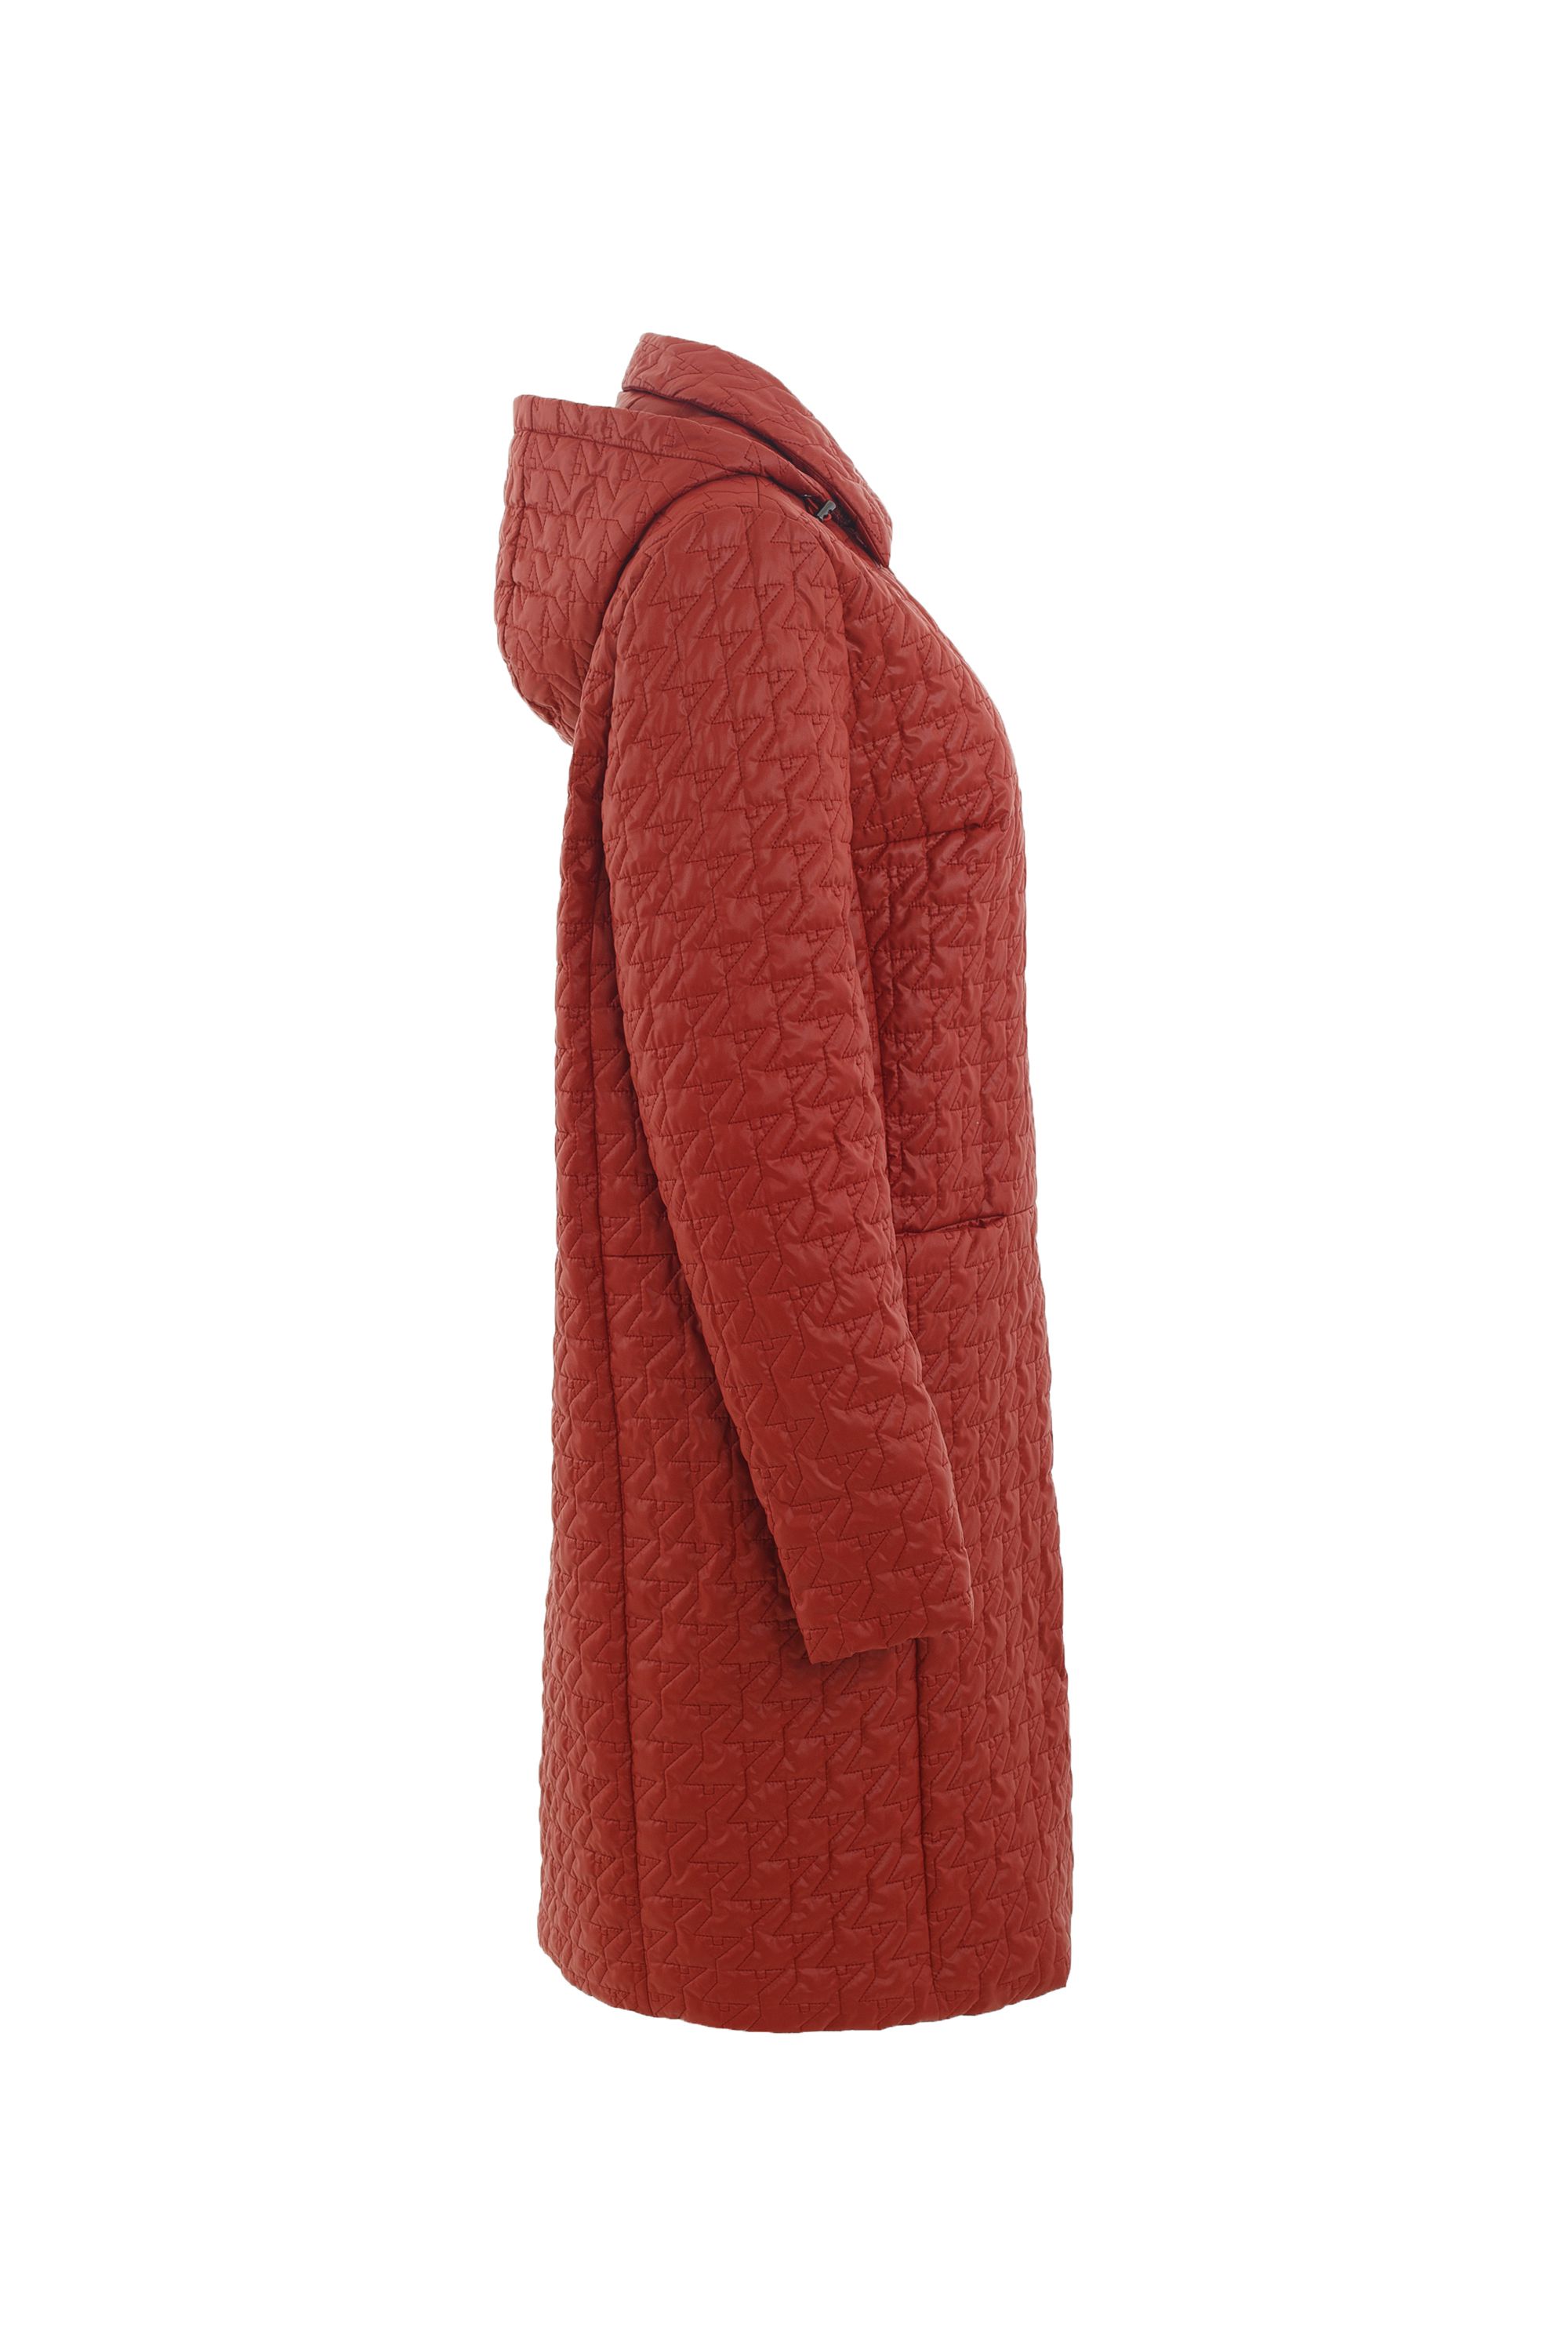 Пальто женское плащевое утепленное 5-12395-1. Фото 2.